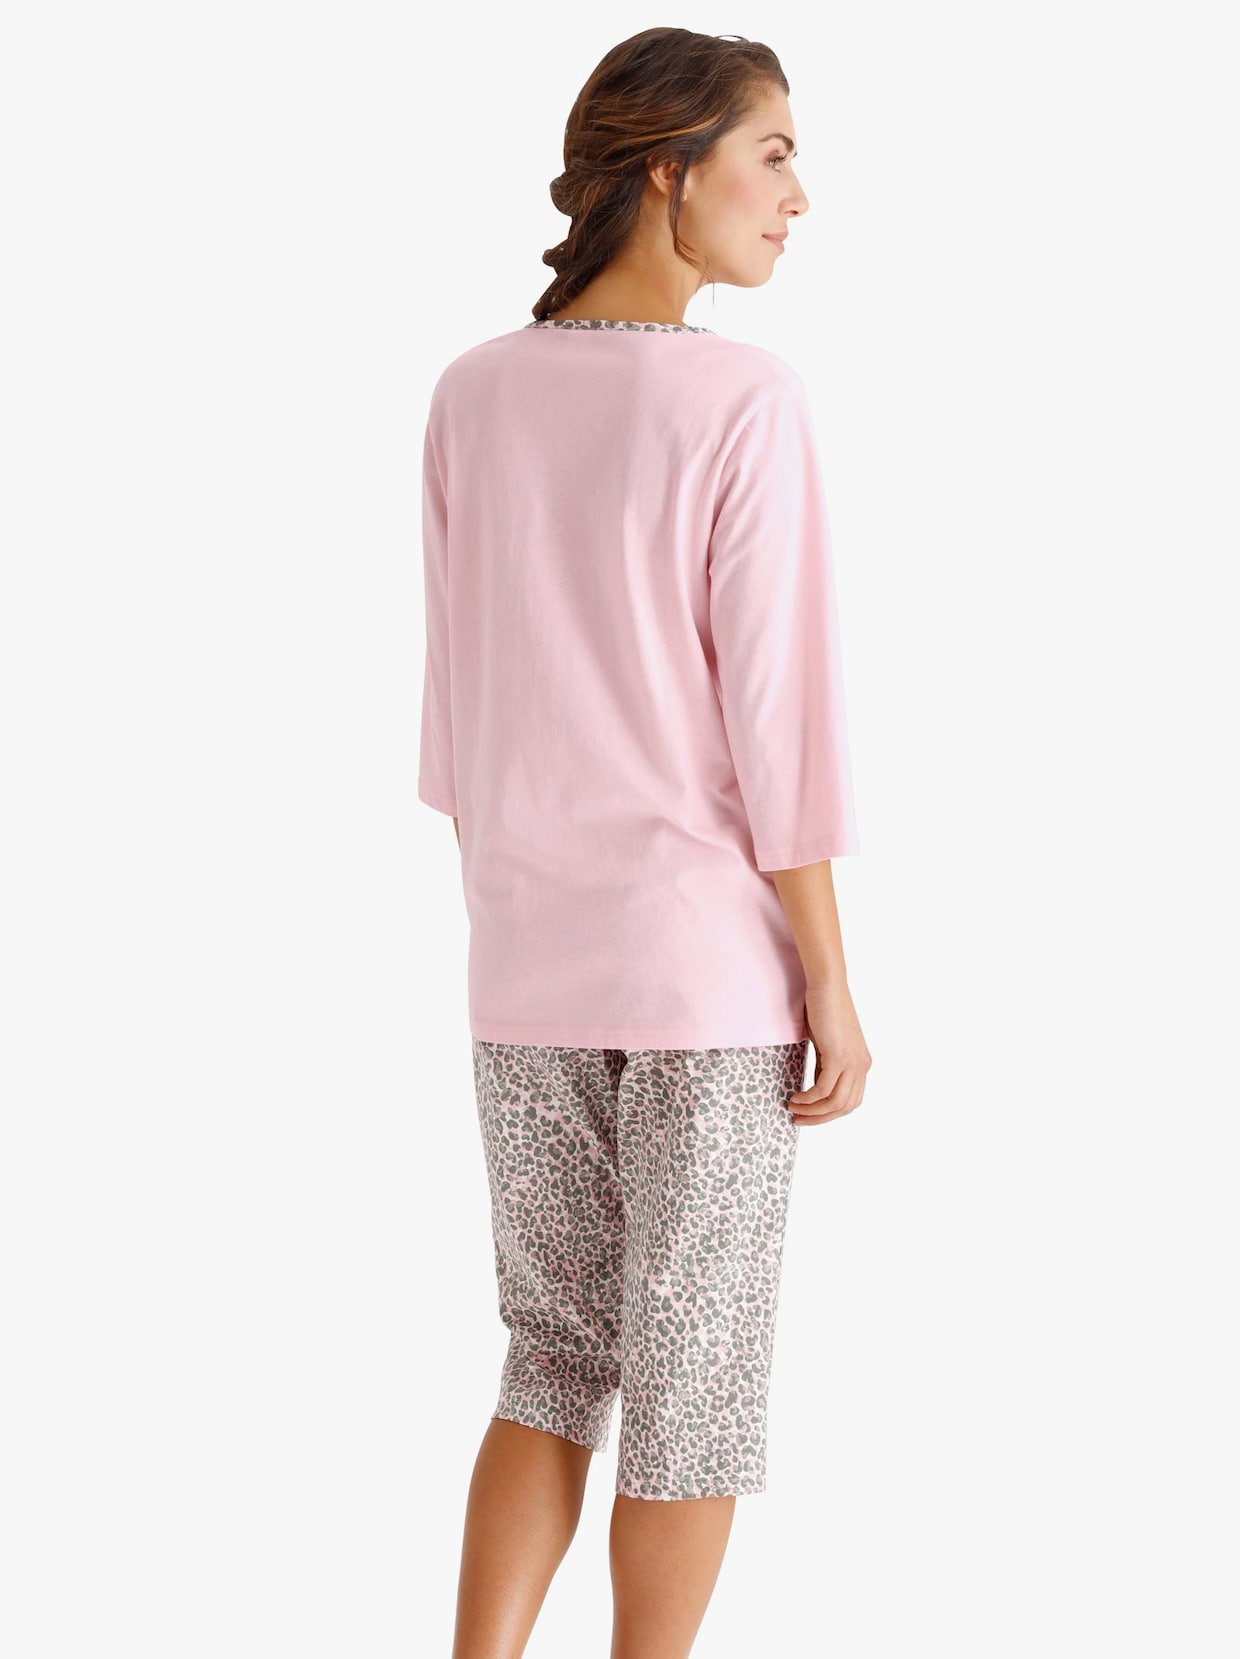 Pyjamas i caprimodell - ljusrosa-grå, tryckt